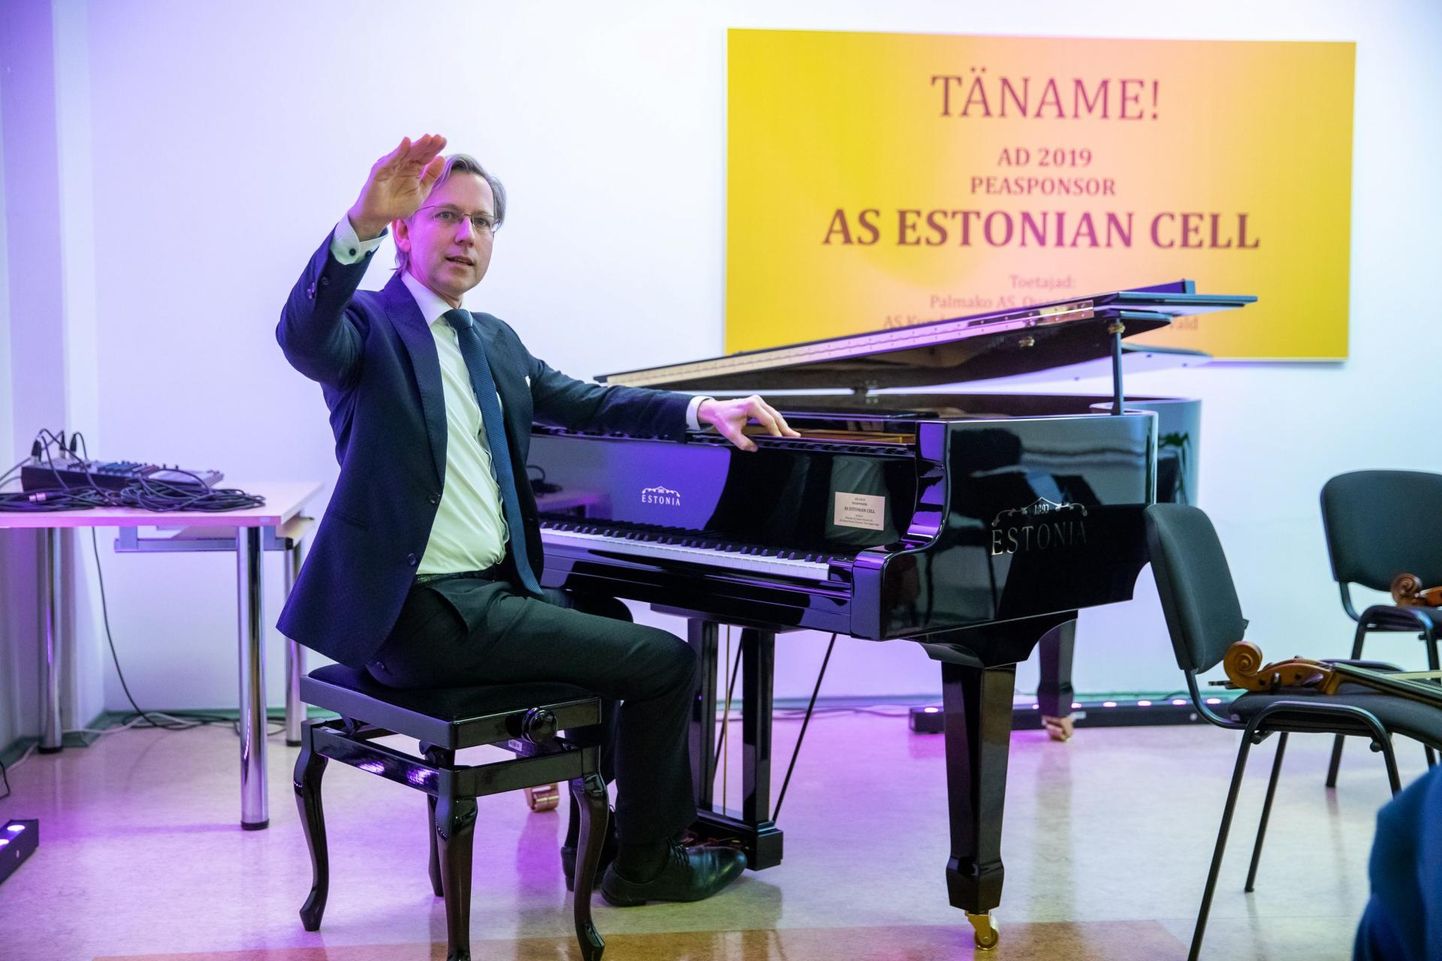 Üleeile toimus Kunda muusikakoolis ajalooline sündmus. Majja jõudnud uuest süsimustast Estonia klaverist võlus klaverivabriku juht Indrek Laul välja imelisi helisid.